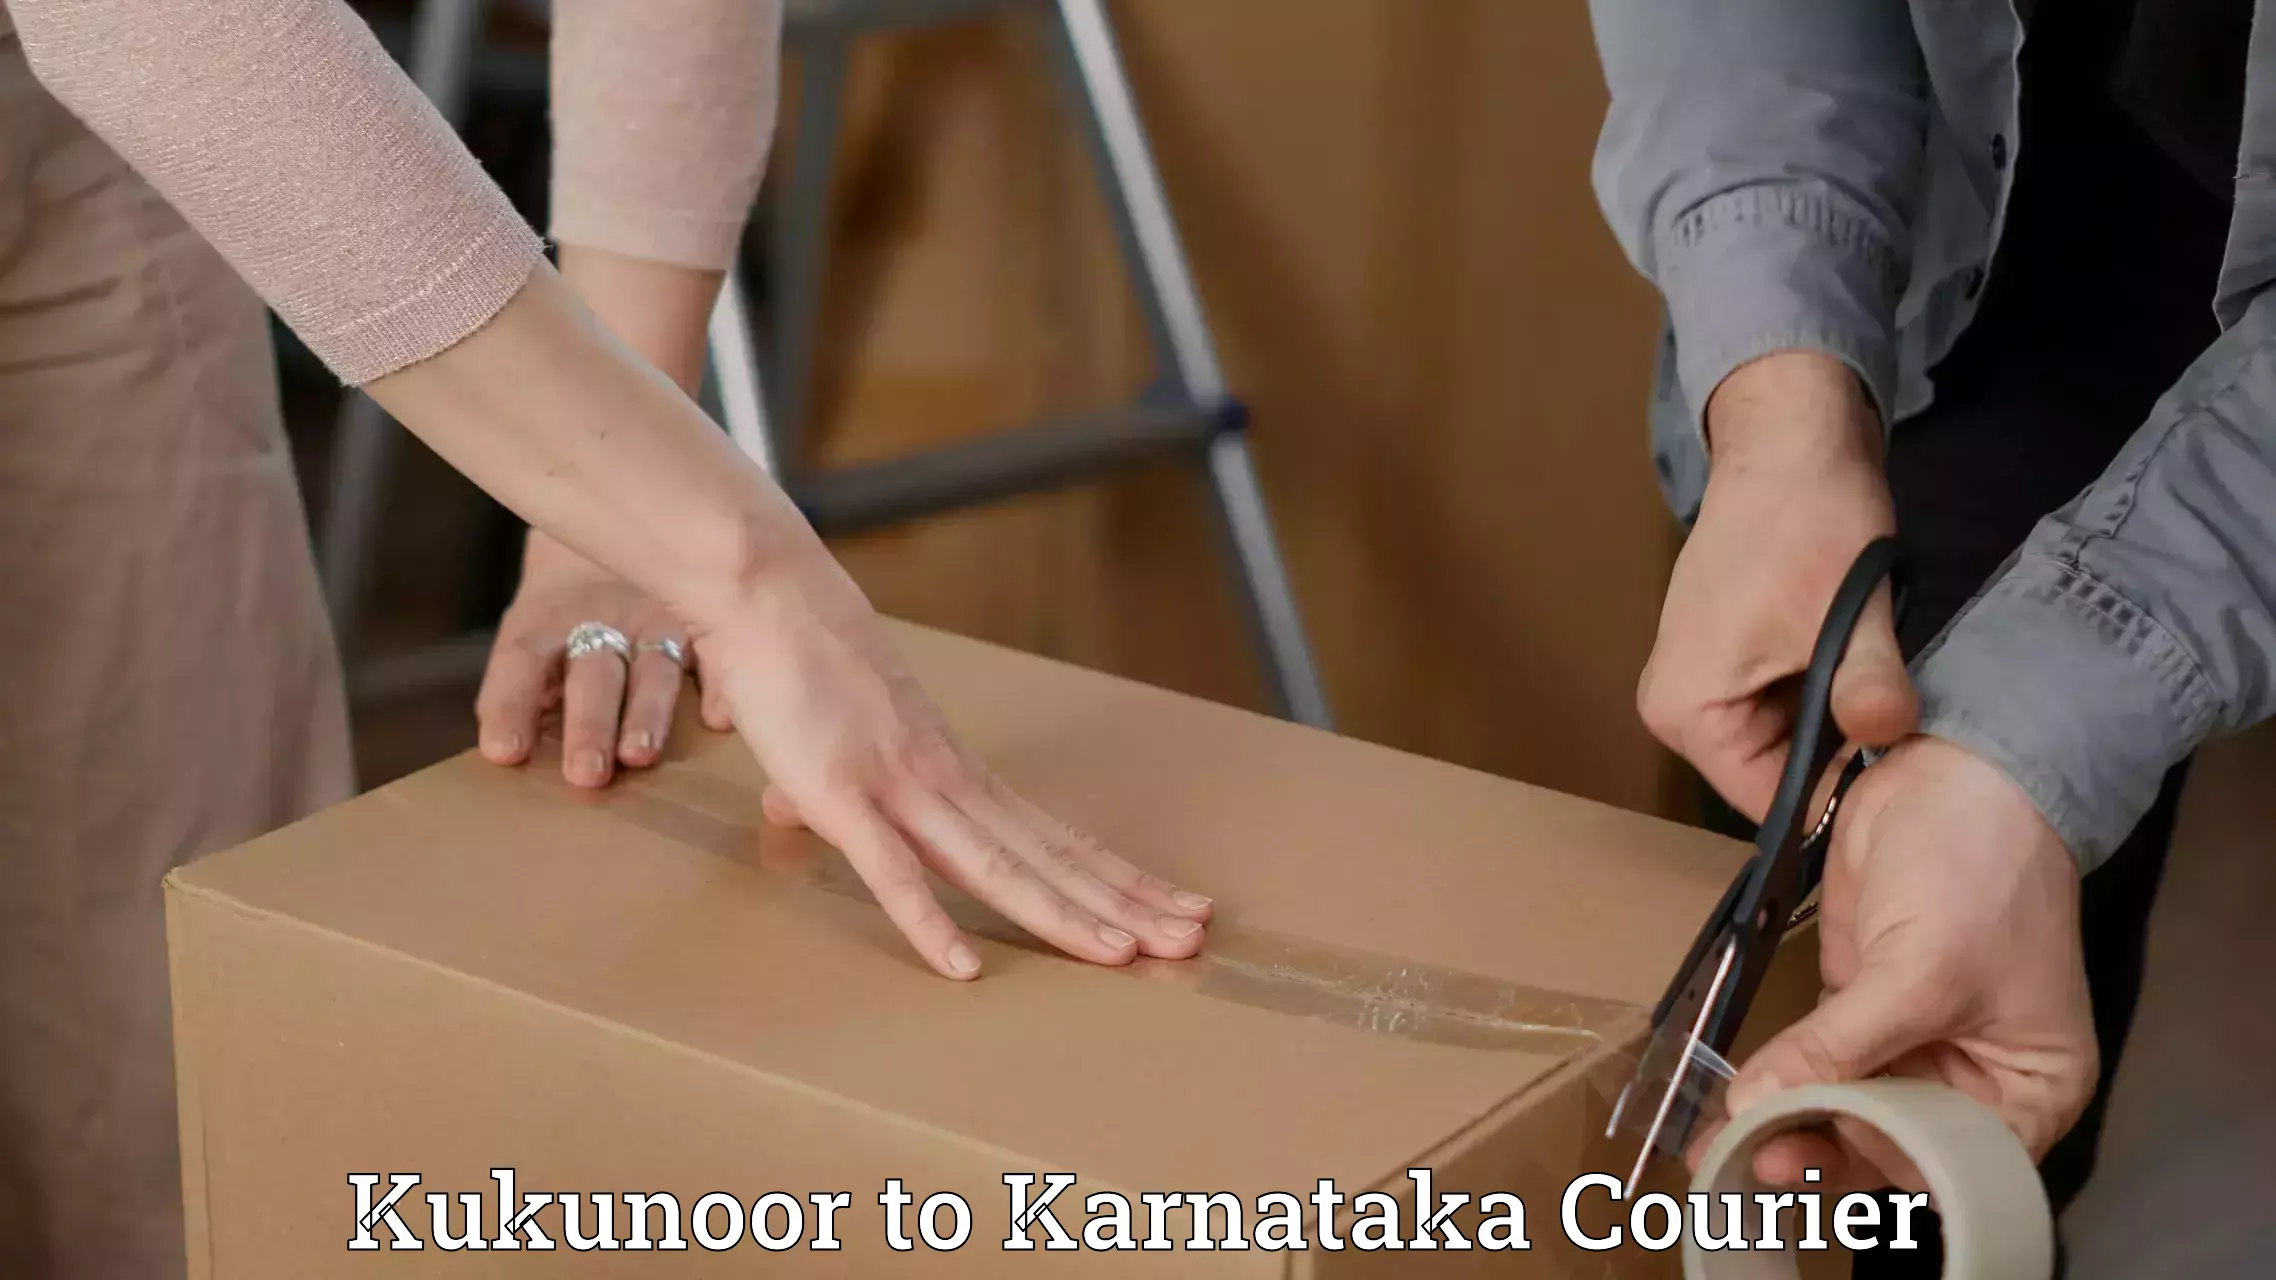 Courier service comparison in Kukunoor to Yadgiri